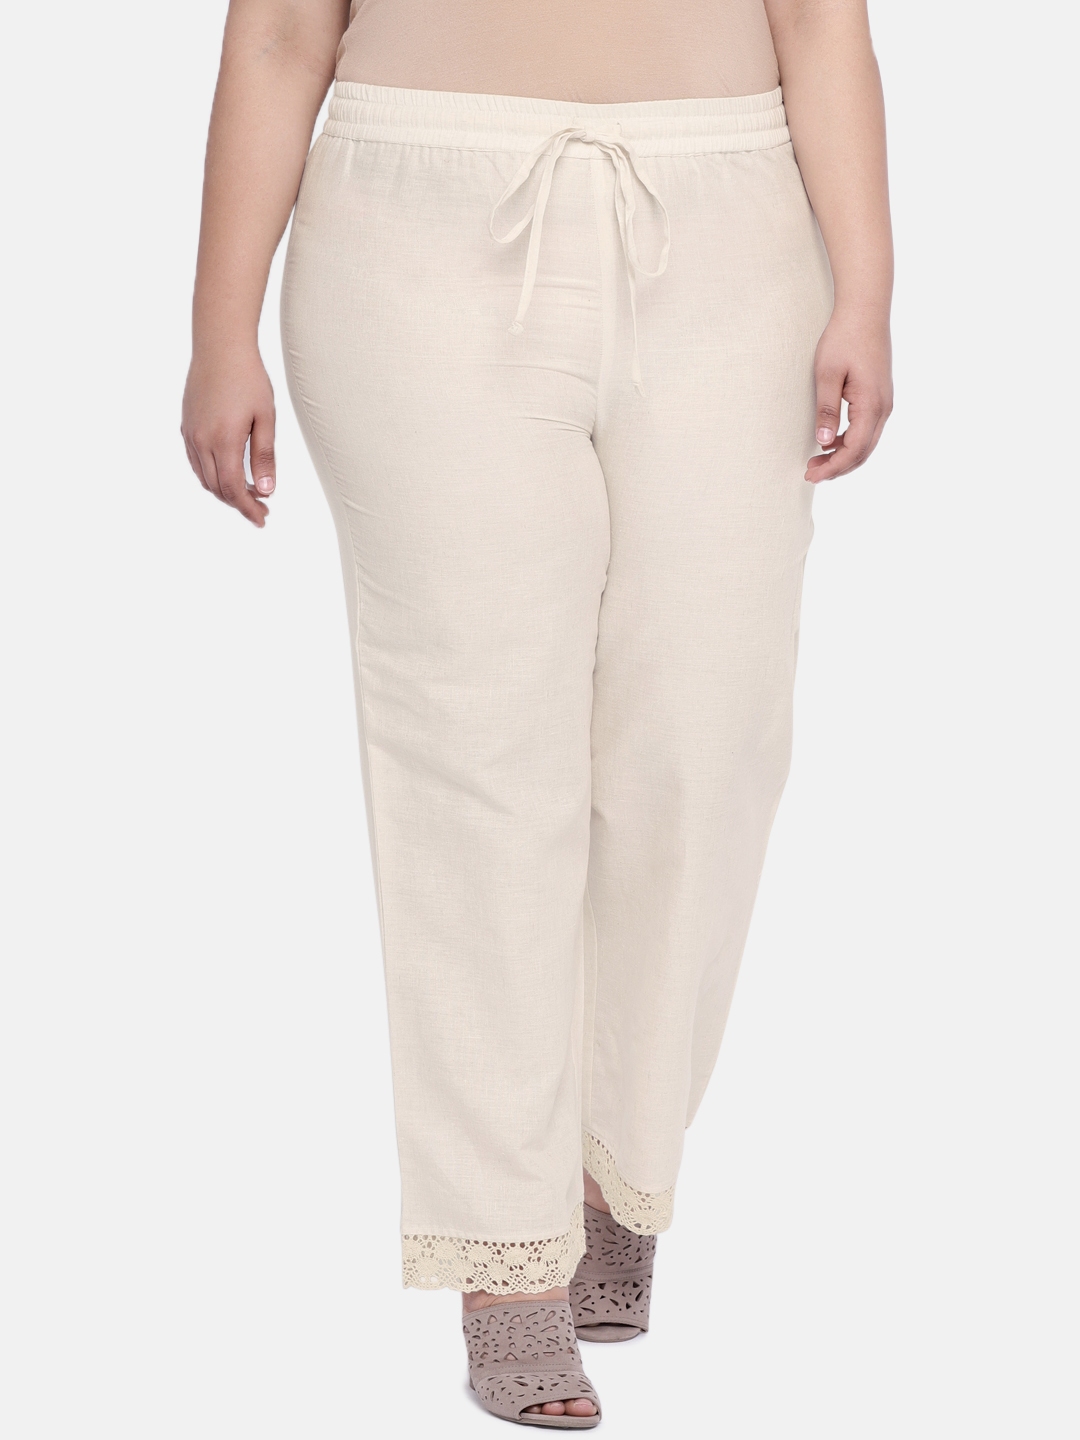 White Women's Plus-Size Casual & Dress Pants